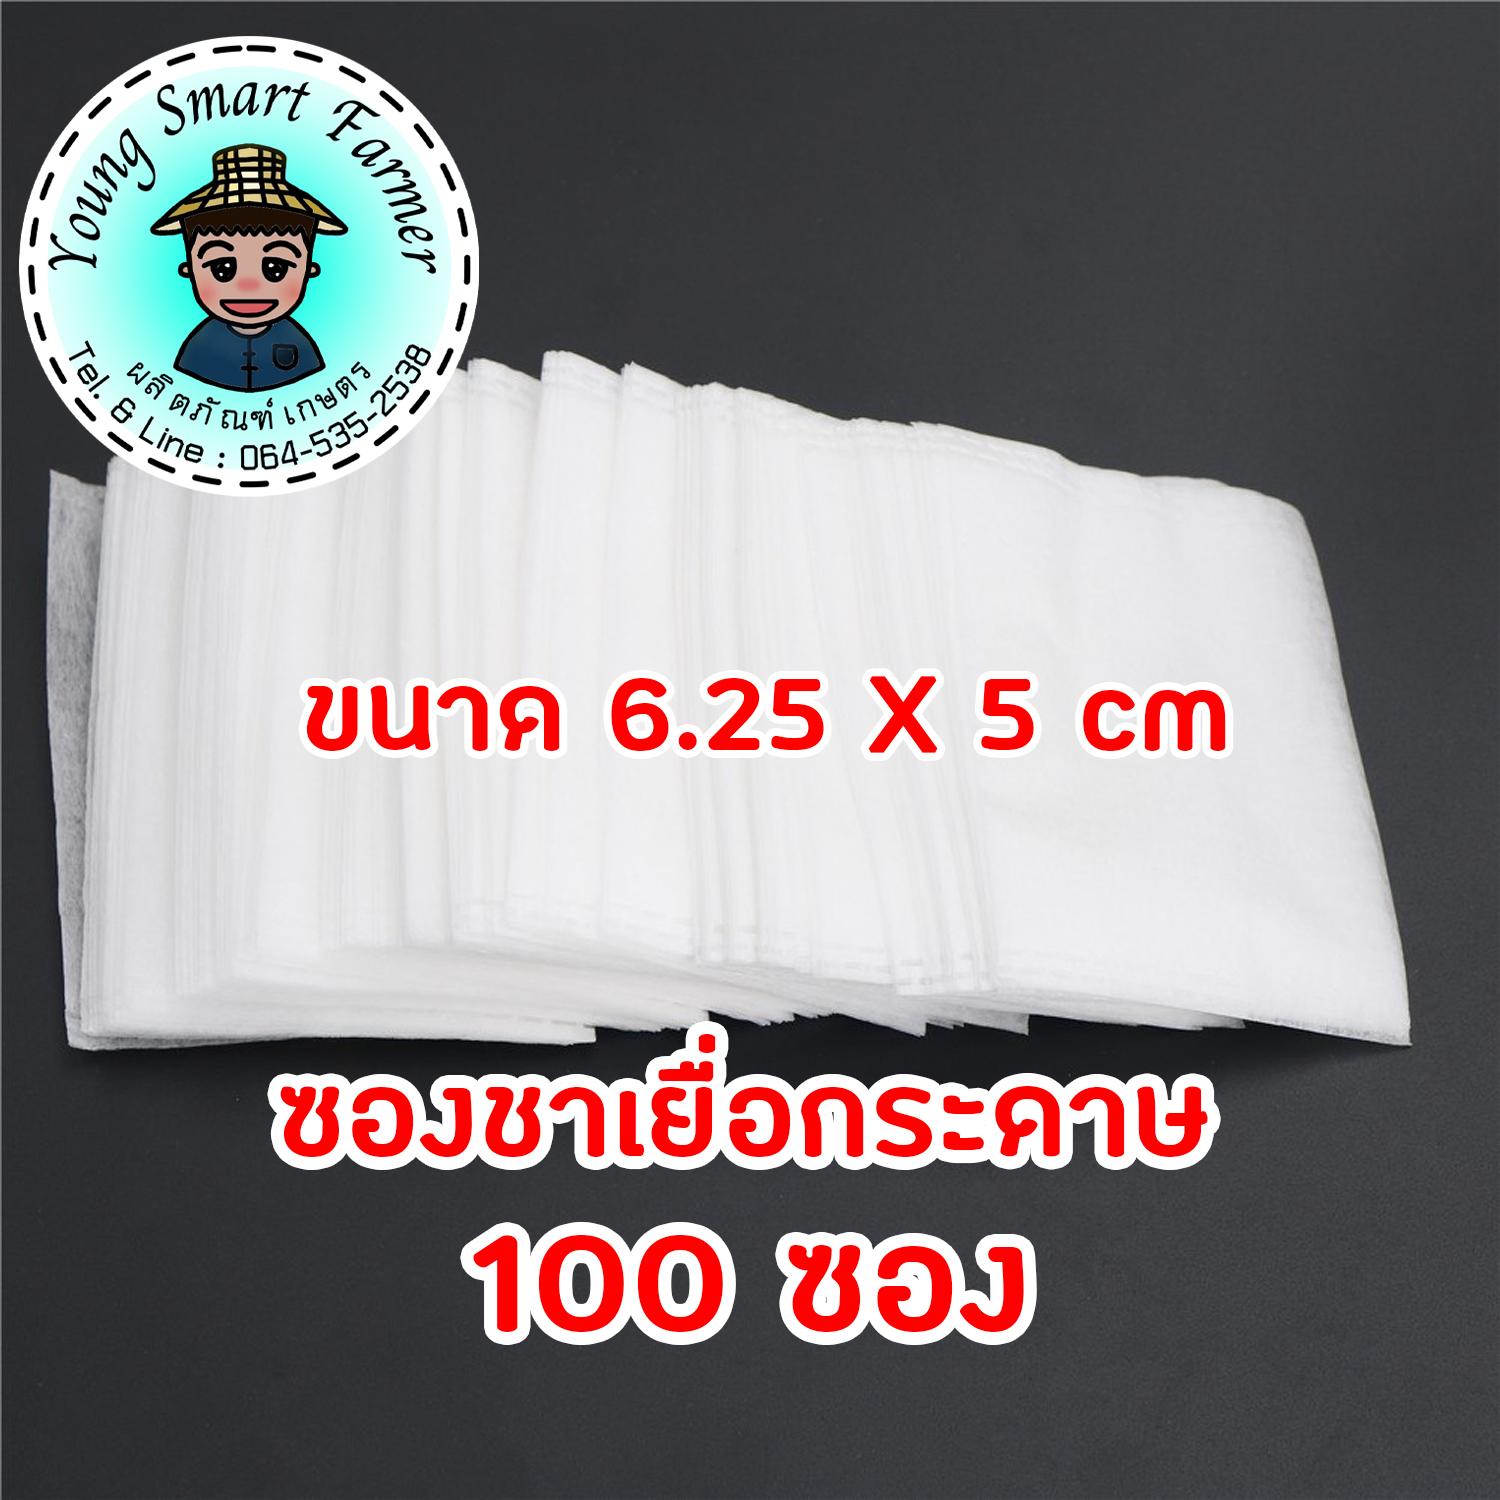 ซองชาเยื่อกระดาษ 100 ซอง (6.25x5 cm.)